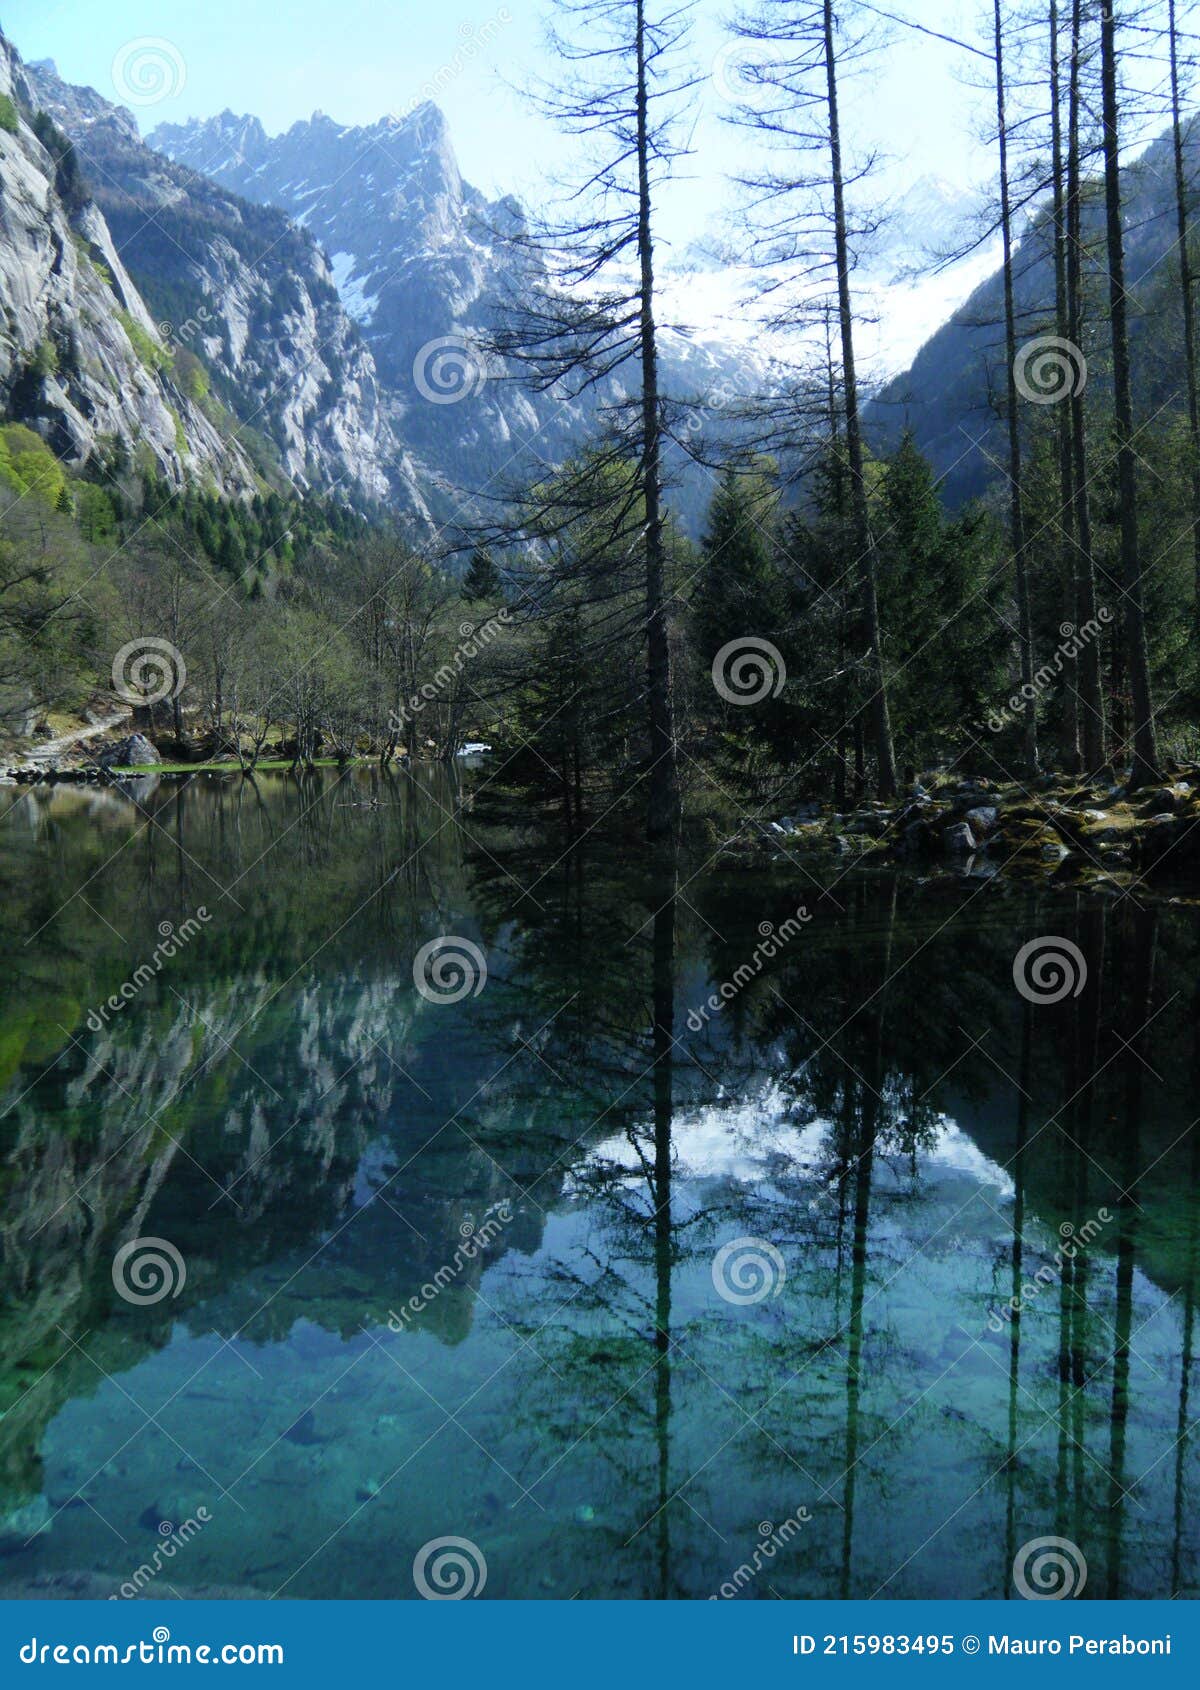 lago di acqua verde trasparente con alberi riflessi